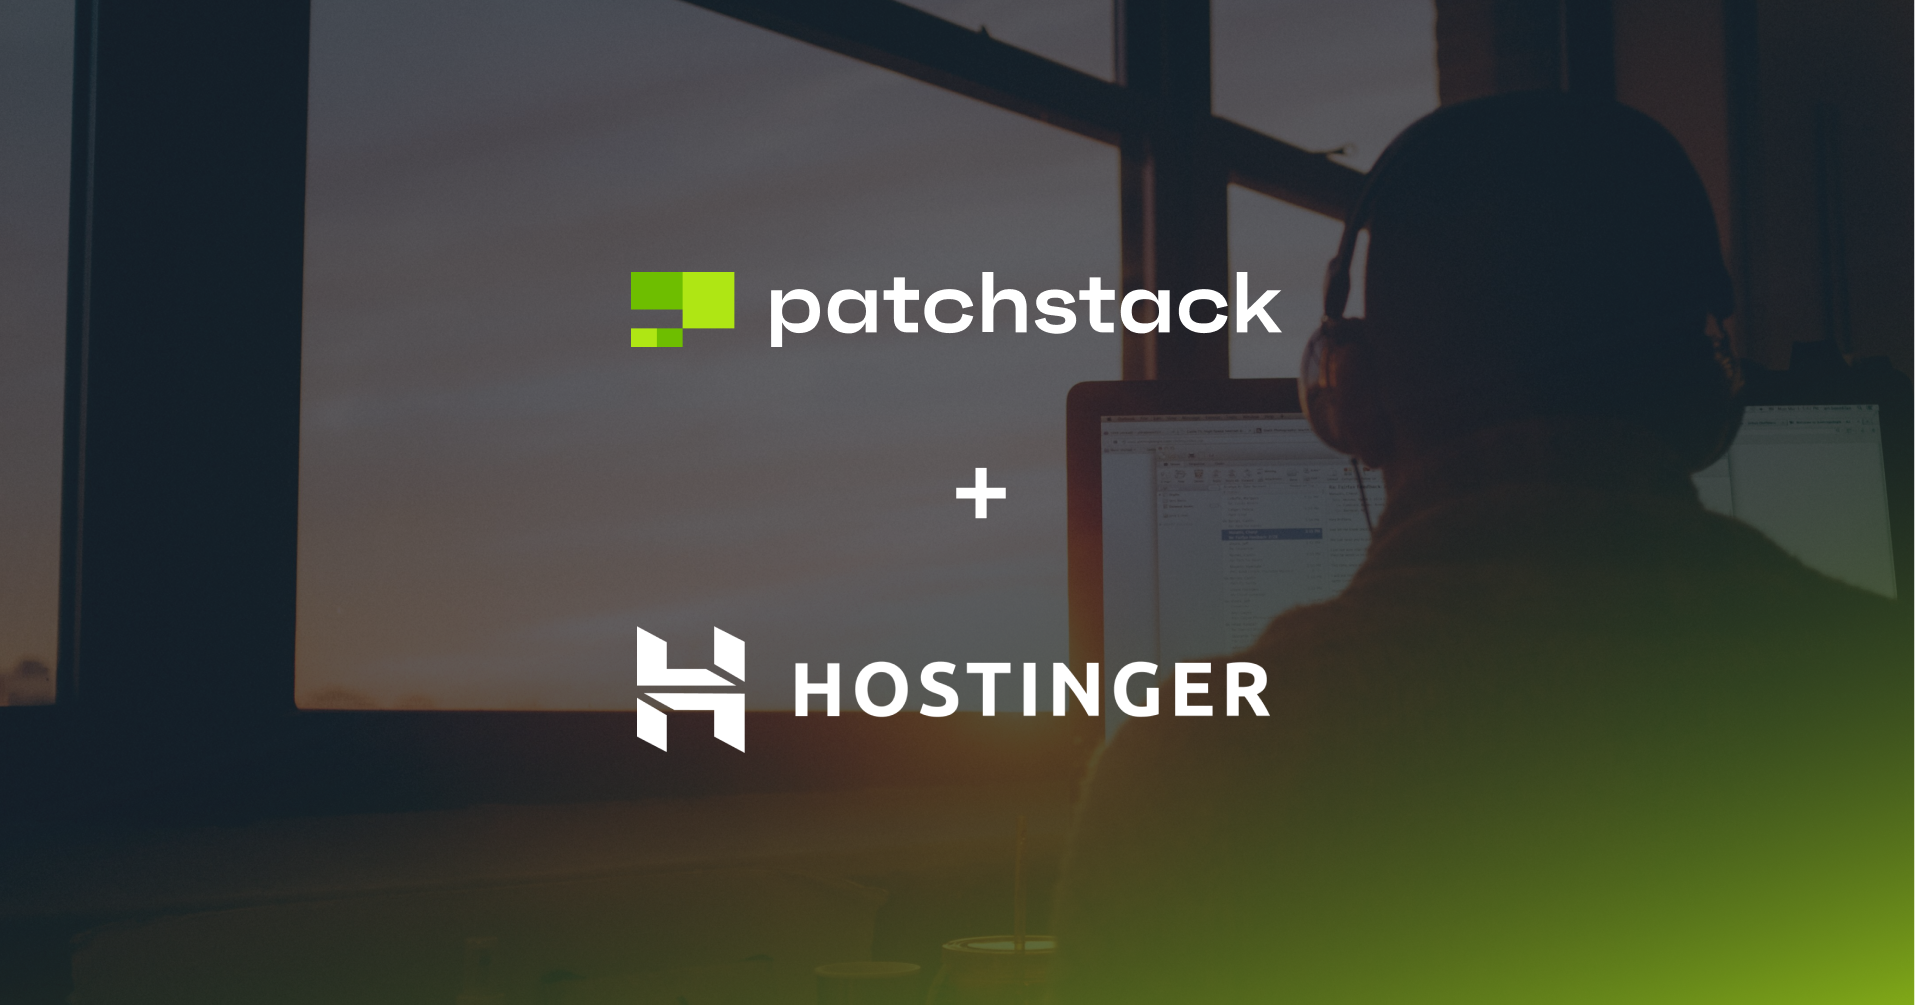 patchstack vulnerability alerts in hostinger